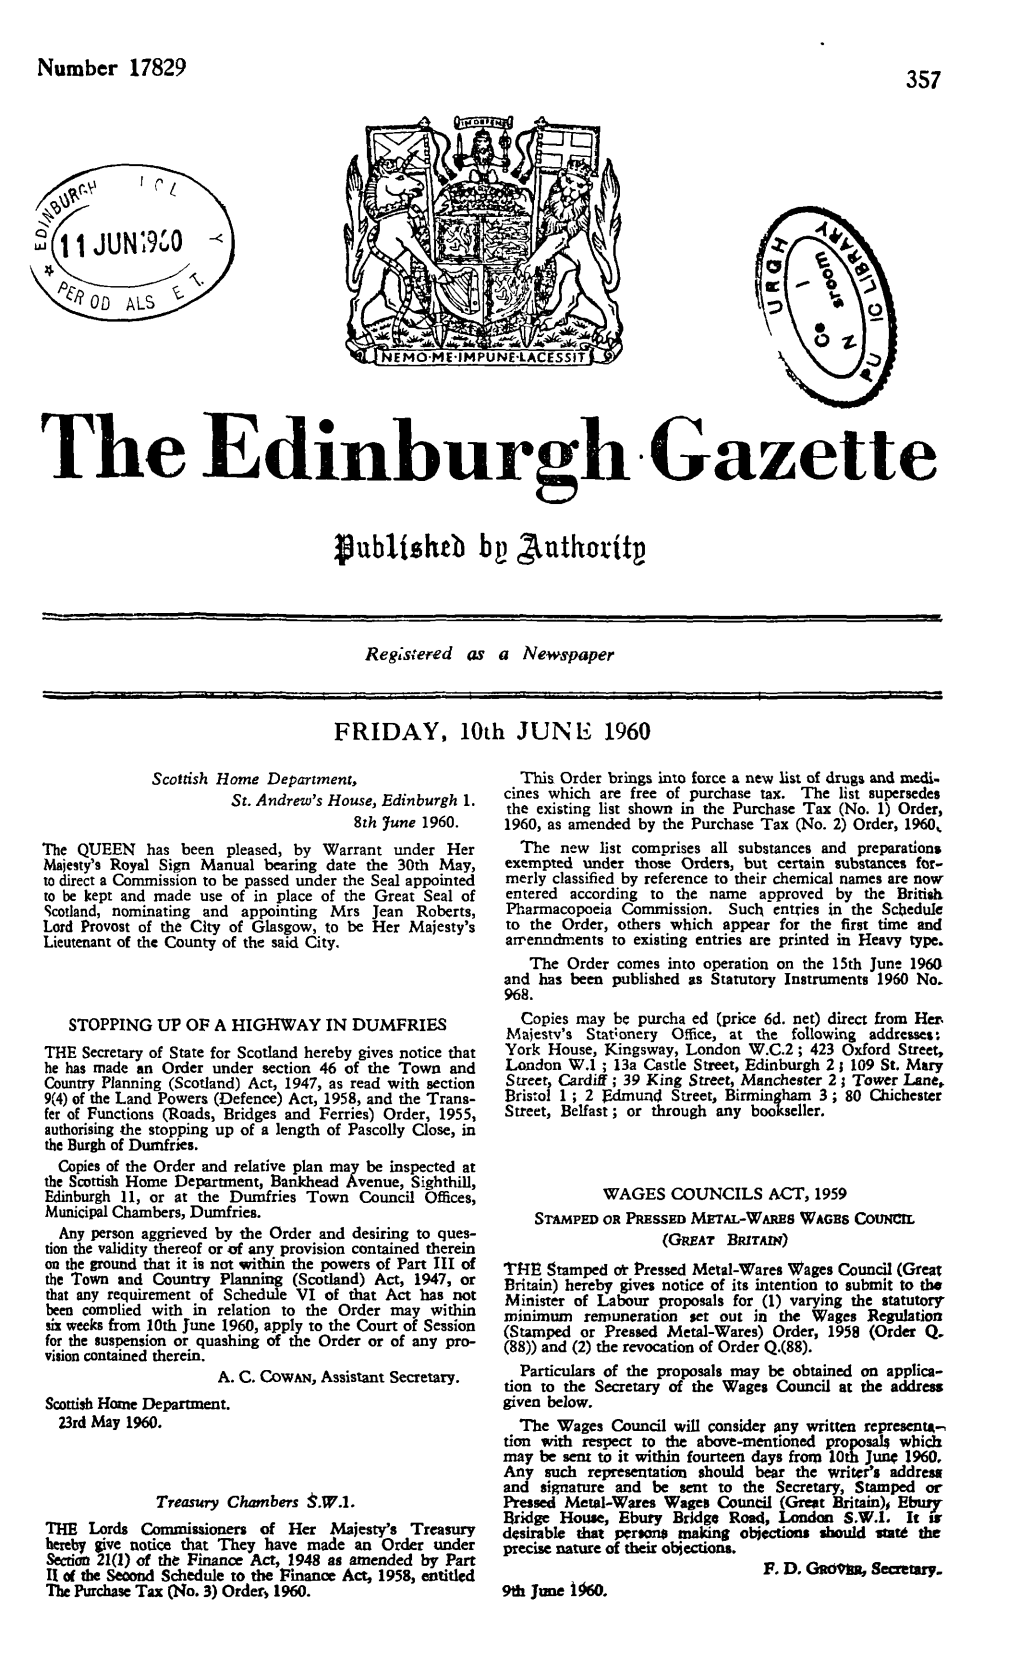 The Edinburgh Gazette, Issue 17829, Page